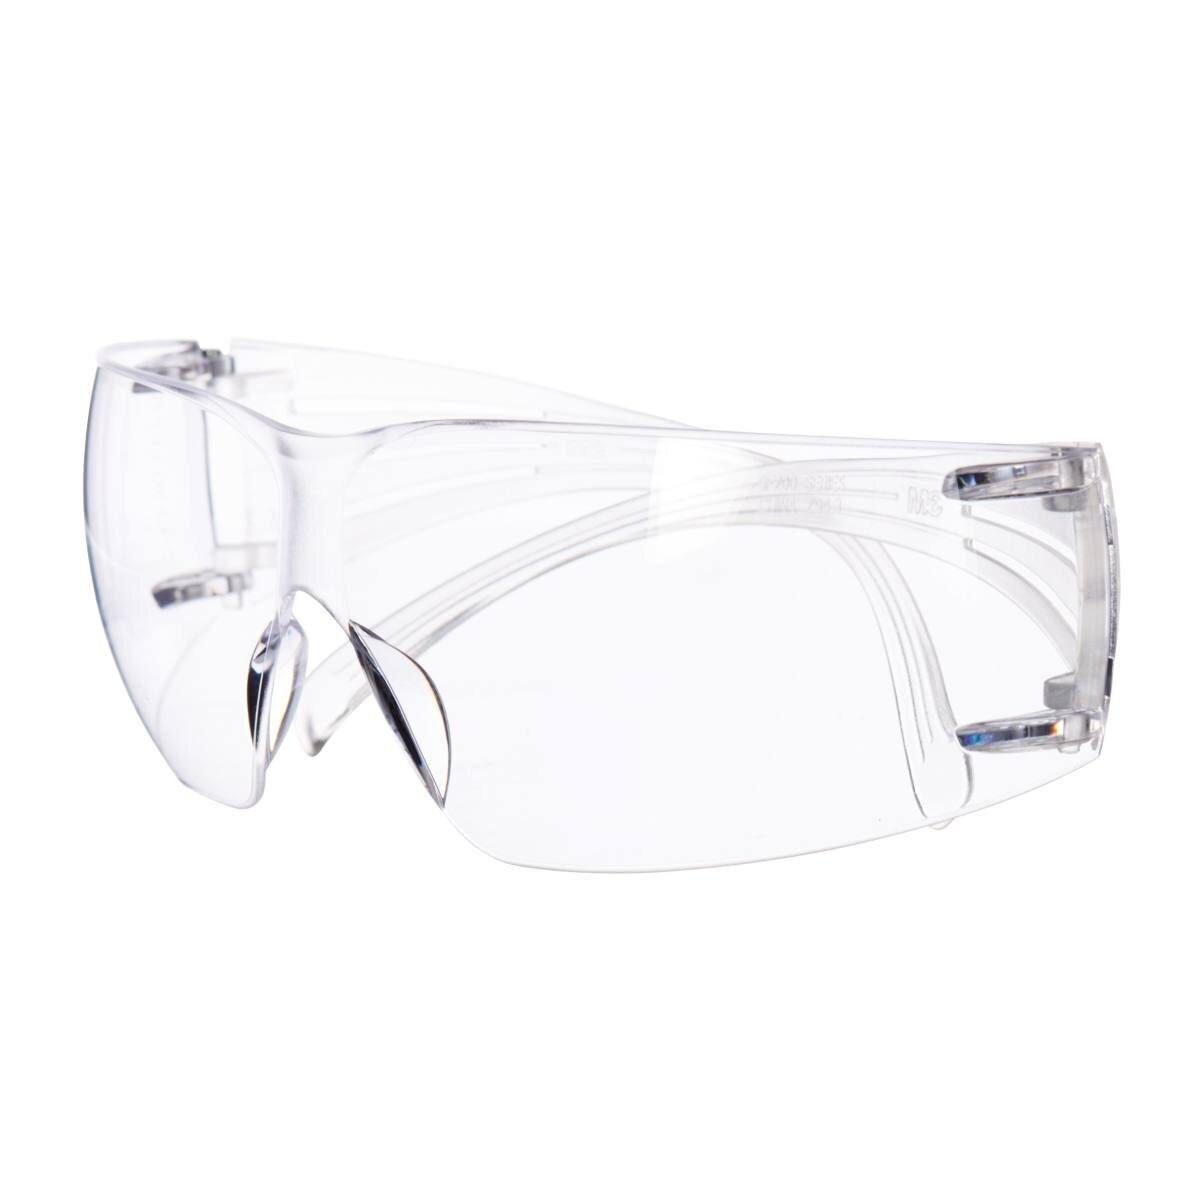 3M SecureFit 400 Reader veiligheidsbril, zwart/groene veren, anti-kras/anti-fog coating, transparante lens met 1,5 sterkte, SF415AS/AF-EU